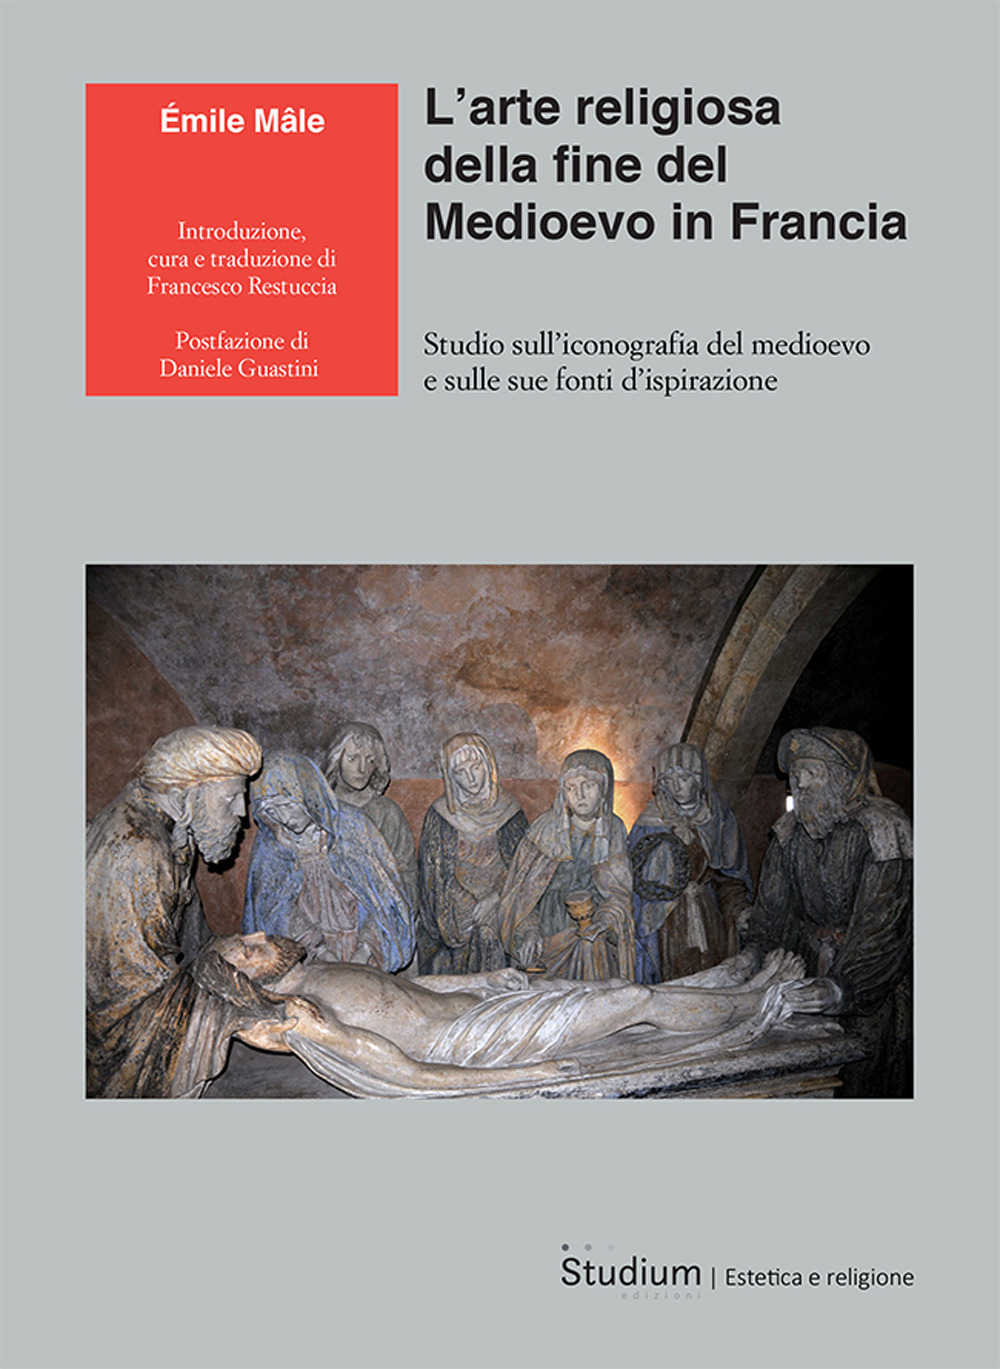 L'arte religiosa della fine del Medioevo in Francia. Studio sull'iconografia del medioevo e sulle sue fonti d'ispirazione